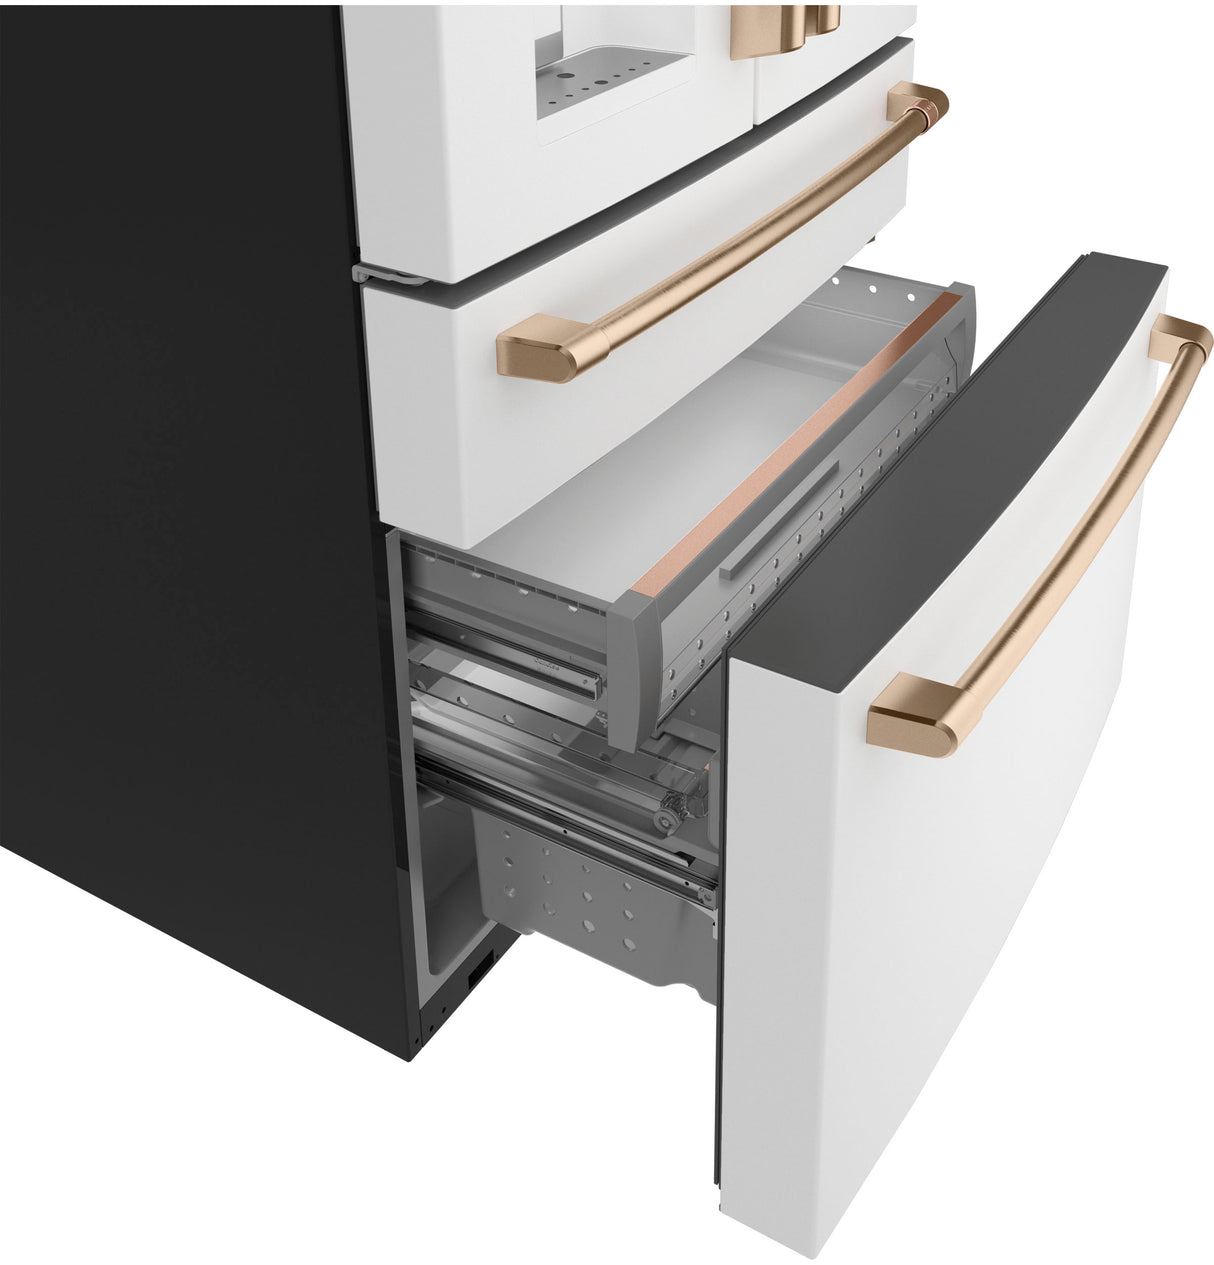 Caf(eback)(TM) ENERGY STAR(R) 22.3 Cu. Ft. Smart Counter-Depth 4-Door French-Door Refrigerator - (CXE22DP4PW2)